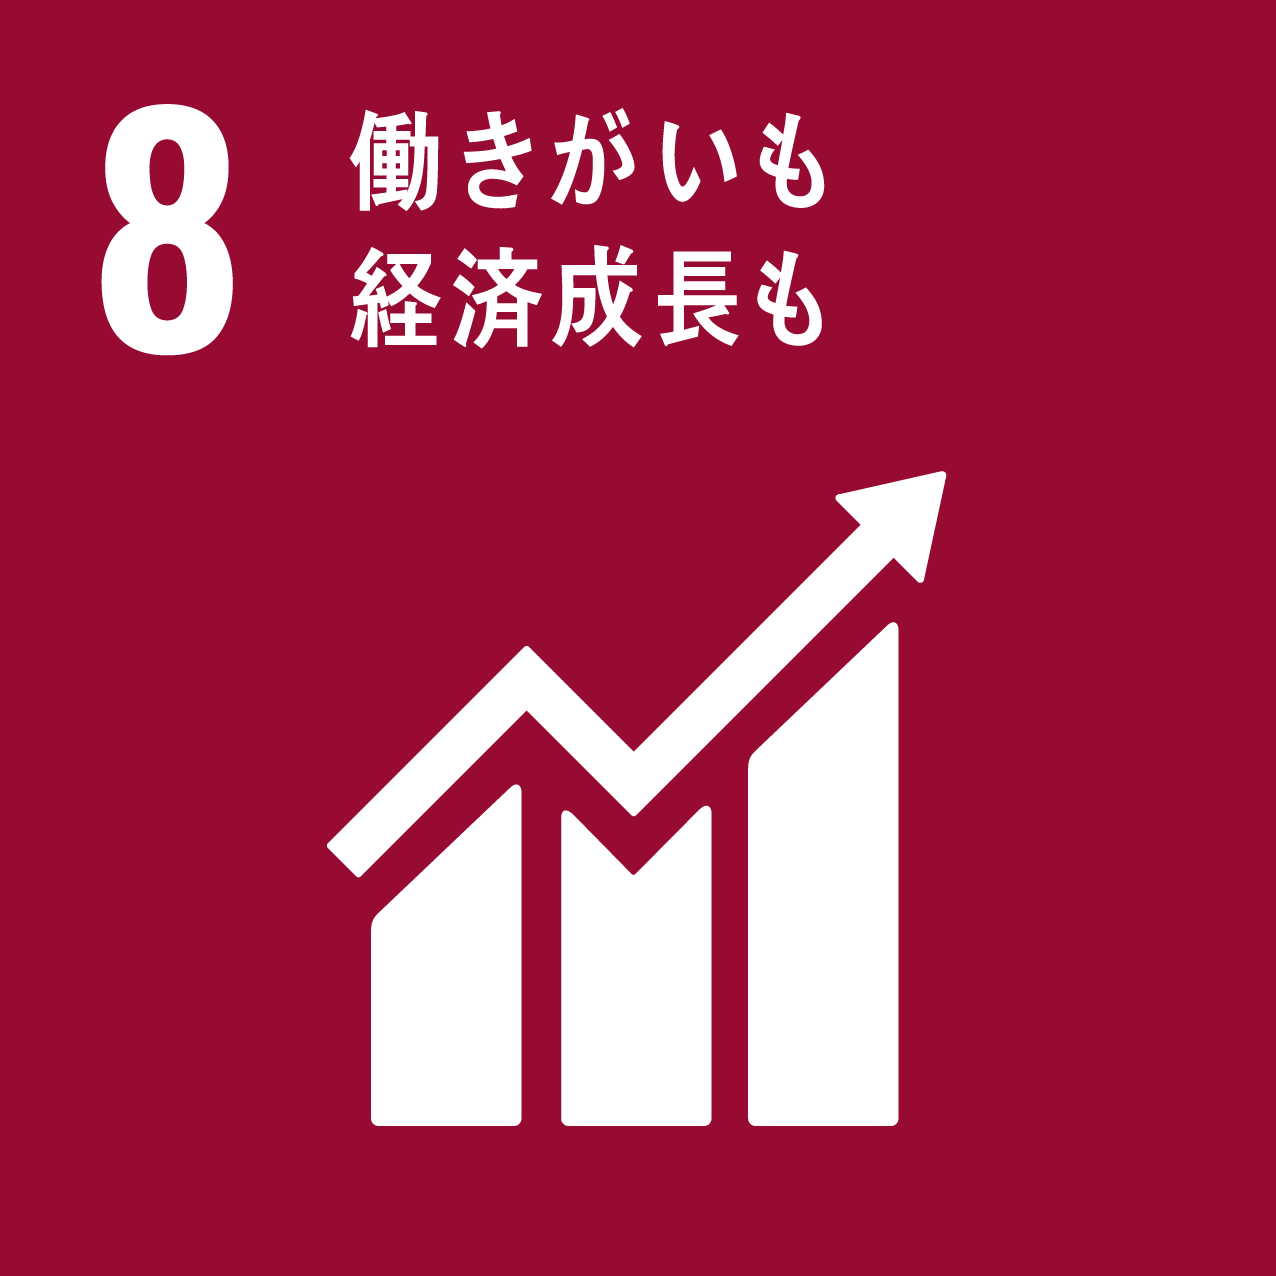 日南町と日南町産業振興センターが目指す、SDGs8のロゴ